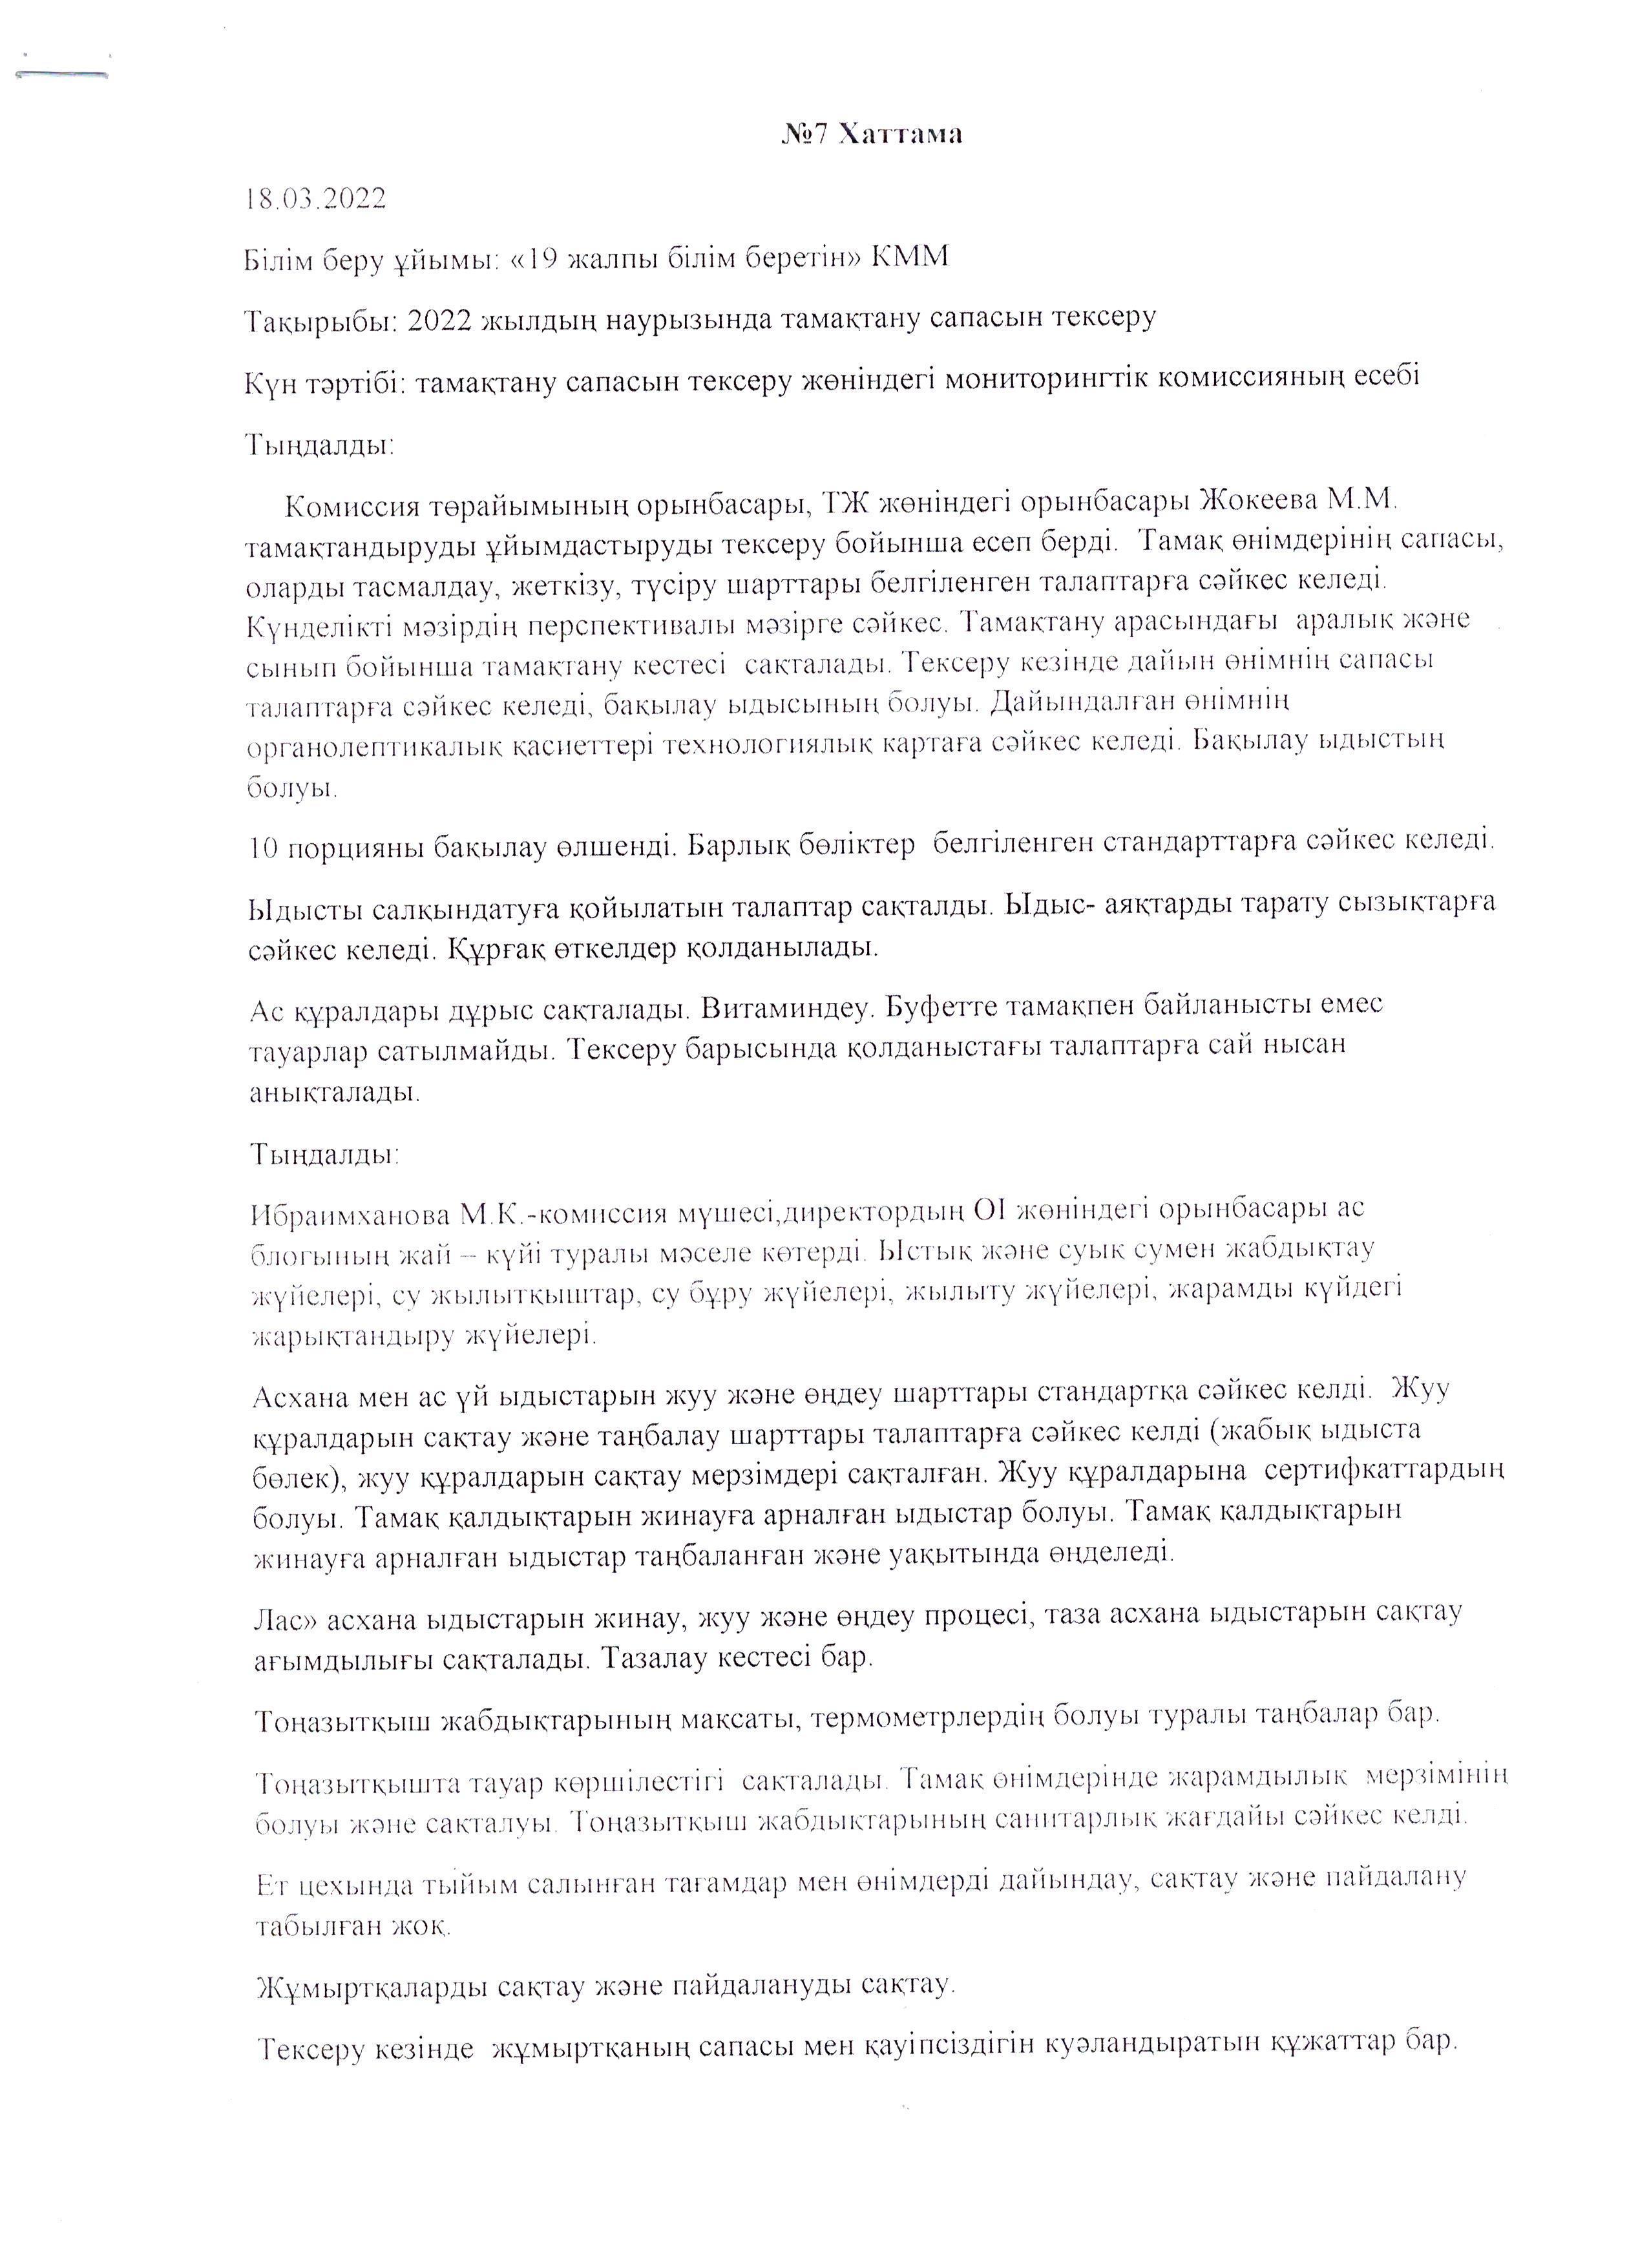 Сәуір айындағы мониторинг комиссиясының хаттамасы/ Протокол мониторинговой комиссии за апрель